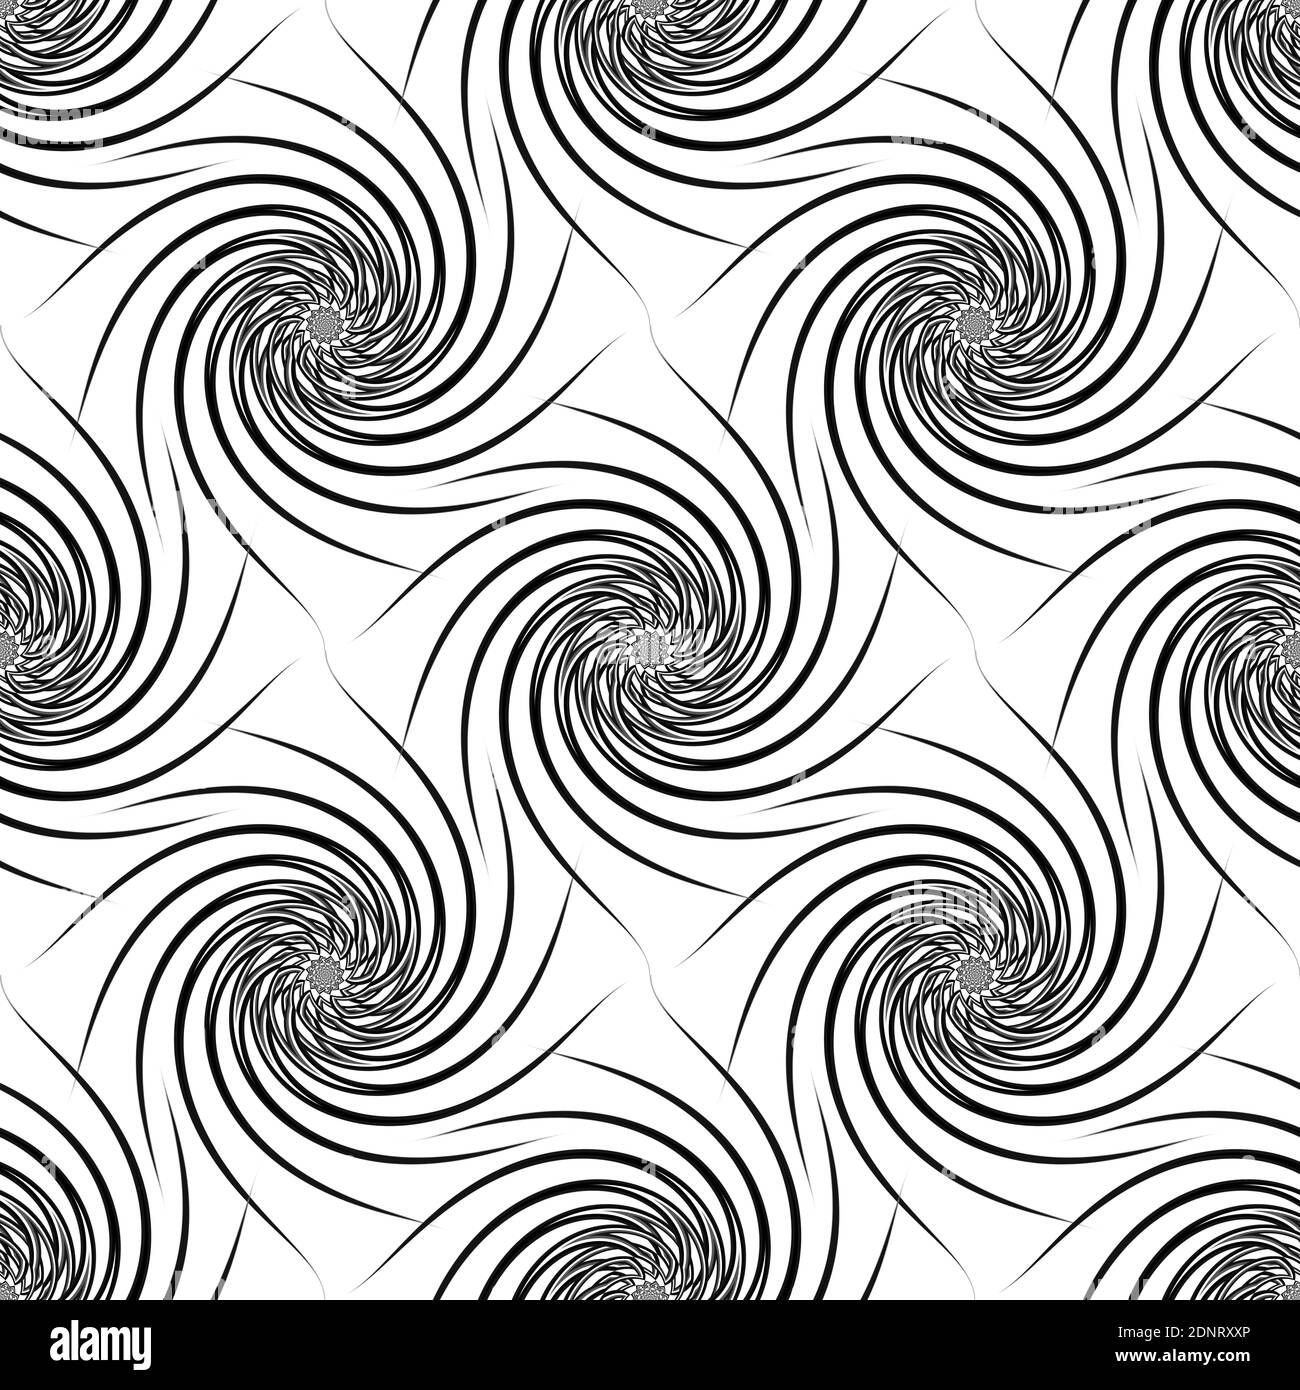 Einfaches Spiralmuster in schwarz und weiß. Grafikdesign. Stockfoto